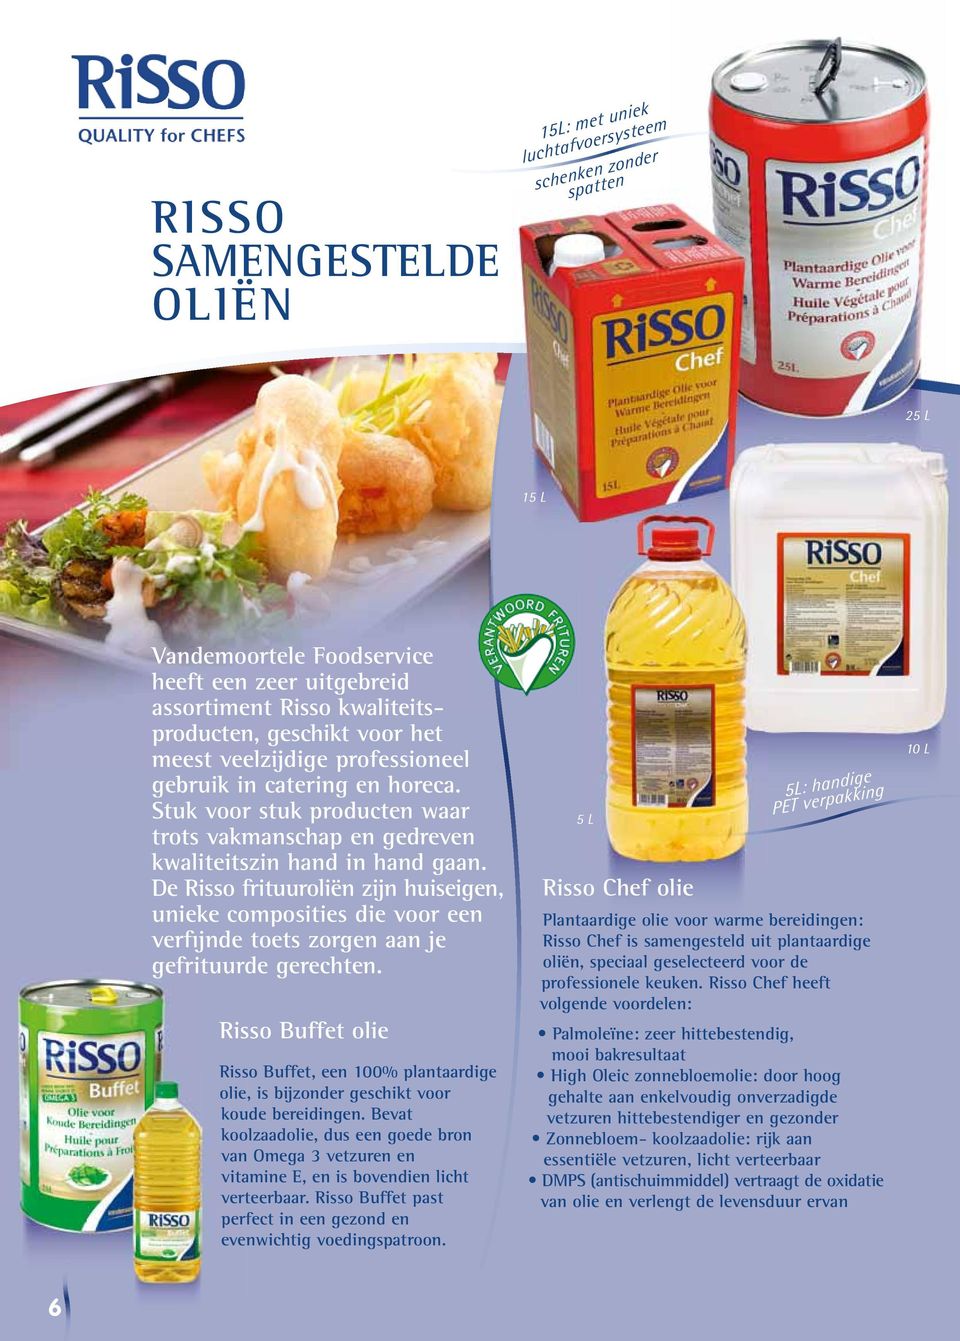 De Risso frituuroliën zijn huiseigen, unieke composities die voor een verfijnde toets zorgen aan je gefrituurde gerechten.